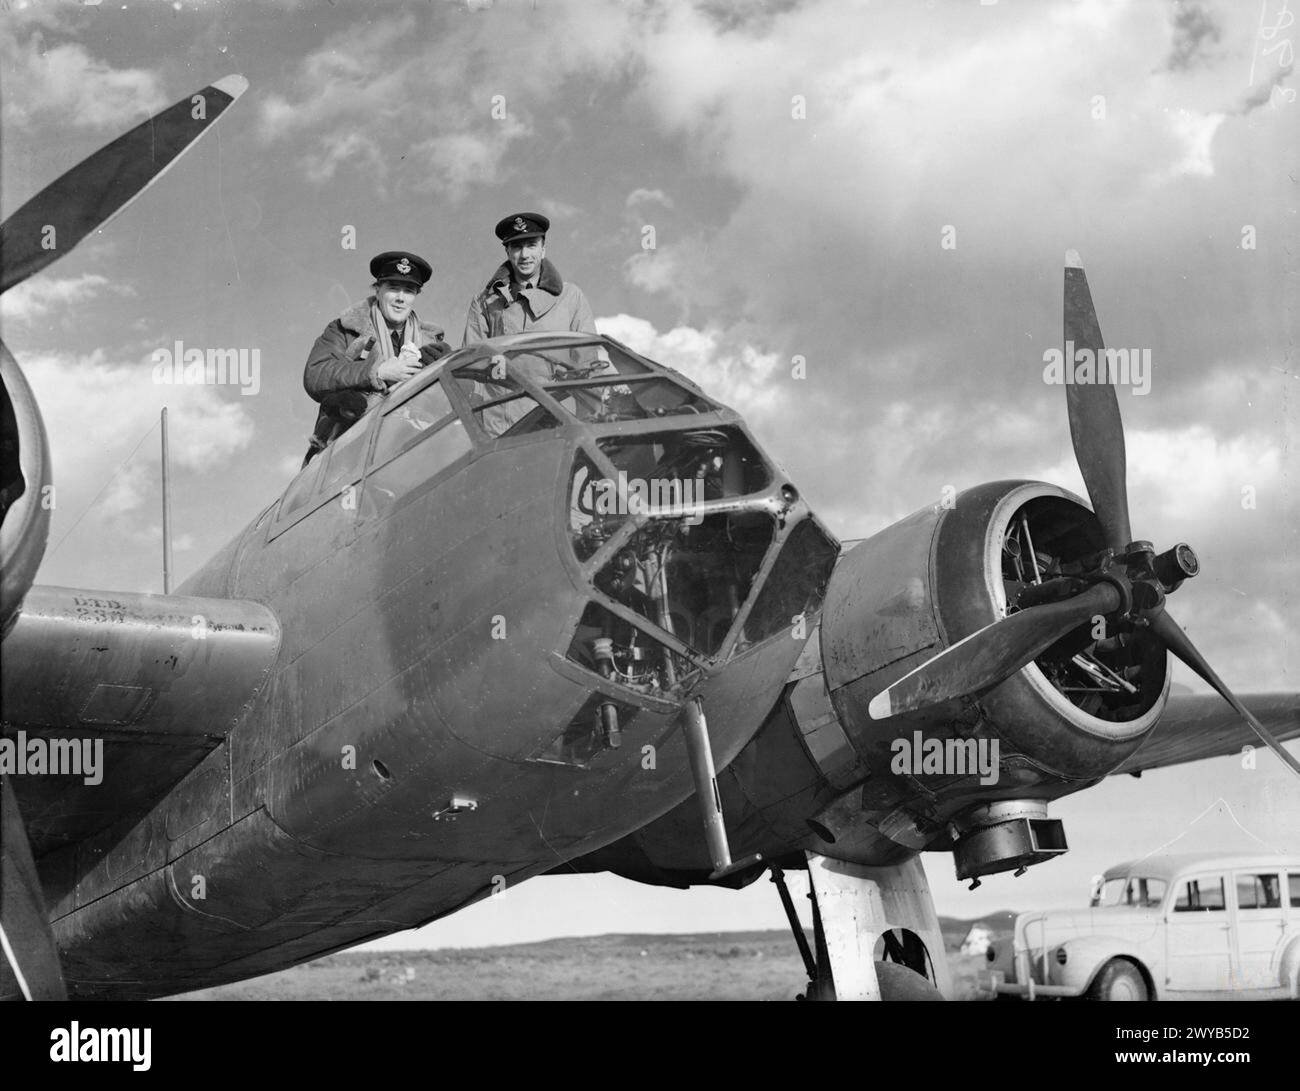 ROYAL AIR FORCE: OPERAZIONI SULL'ALBANIA E IN GRECIA, 1940-1941. - Il Comandante del No. 211 Squadron RAF, il capo di squadra J R Gordon-Finlayson, e il suo operatore/cannoniere senza fili, l'ufficiale pilota A C Geary, fotografati in un Bristol Blenheim Mark i a Menidi/Tatoi, in Grecia, dopo essere tornati da Corfù. Il 24 novembre 1941, l'aereo di Gordon-Finlayson fu colpito da un fuoco antiaereo durante un bombardamento a Valona, in Albania. Incapace di raggiungere Menidi, sbarcò con la forza su una spiaggia di Corfù, dove lui e il suo equipaggio furono tostati e mangiati prima di tornare sulla terraferma con un peschereccio e un rejoini Foto Stock